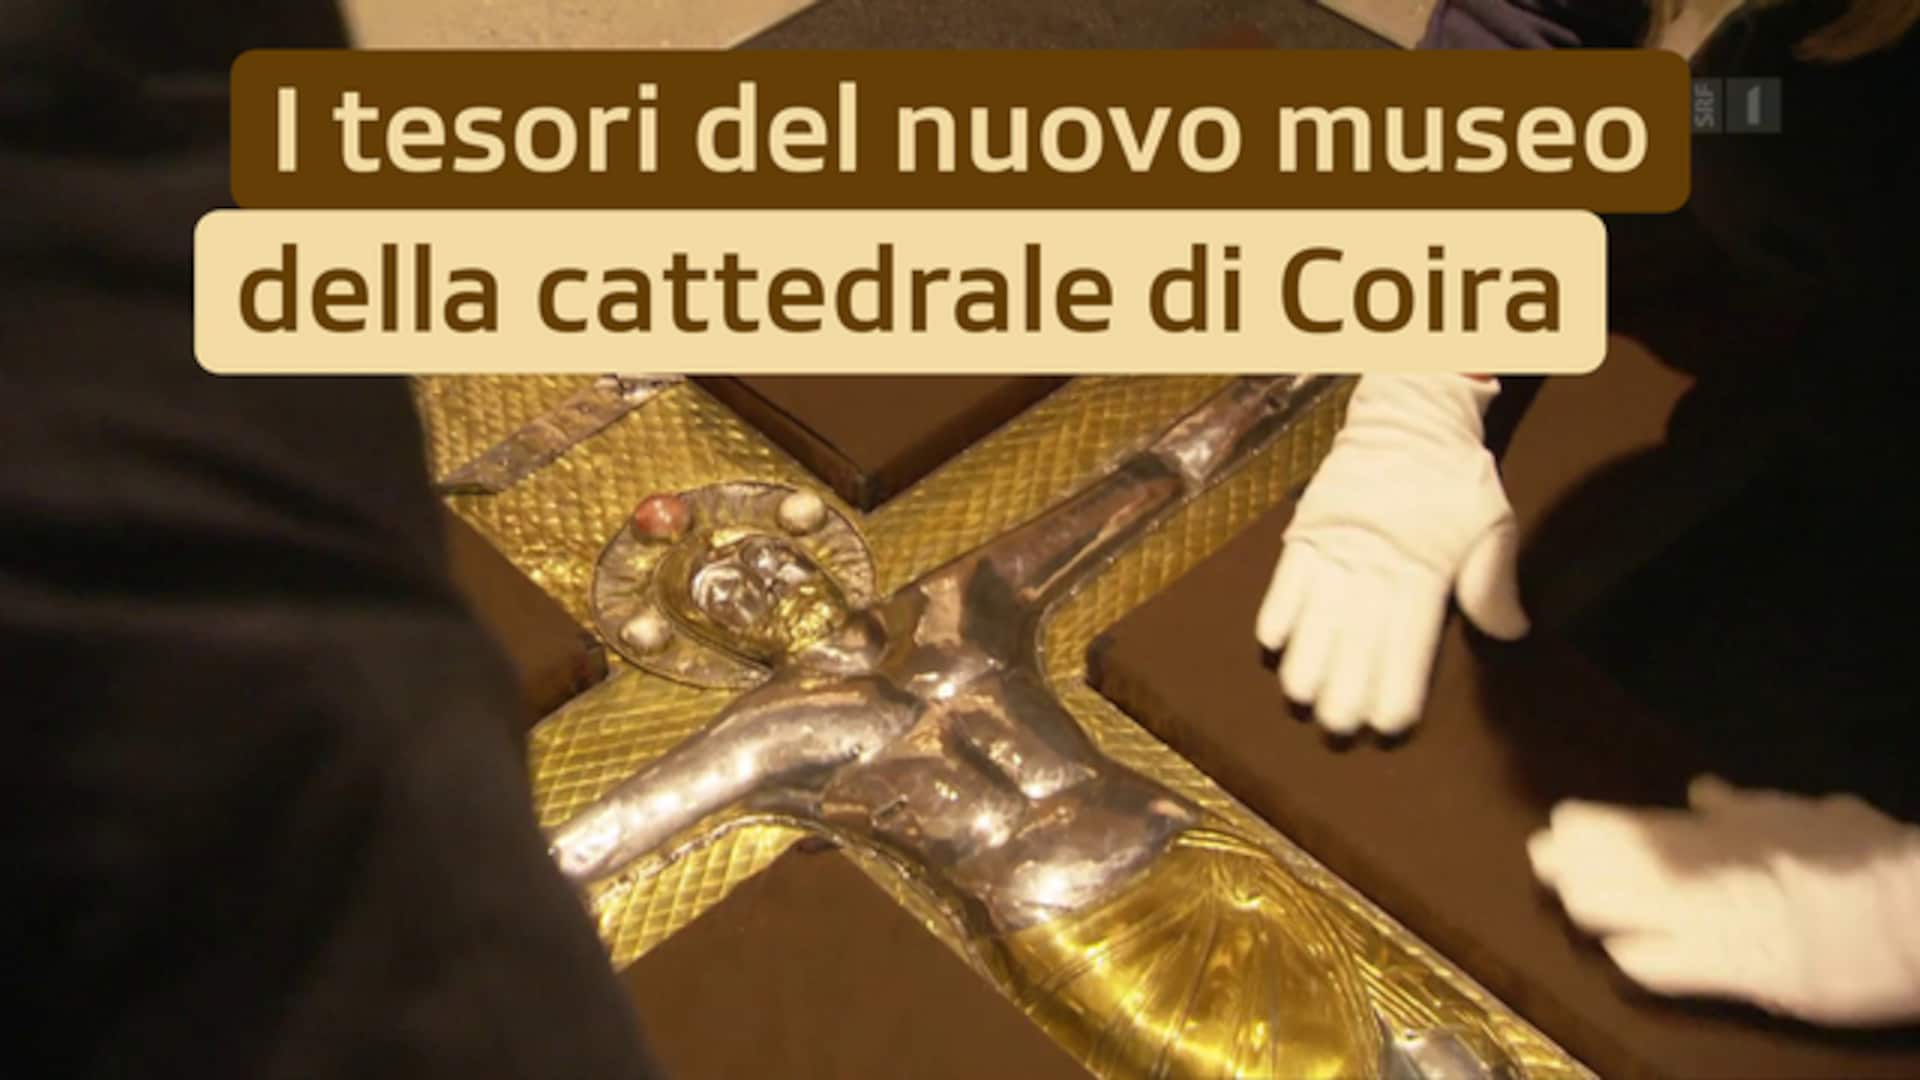 I tesori del nuovo museo della cattedrale di Coira